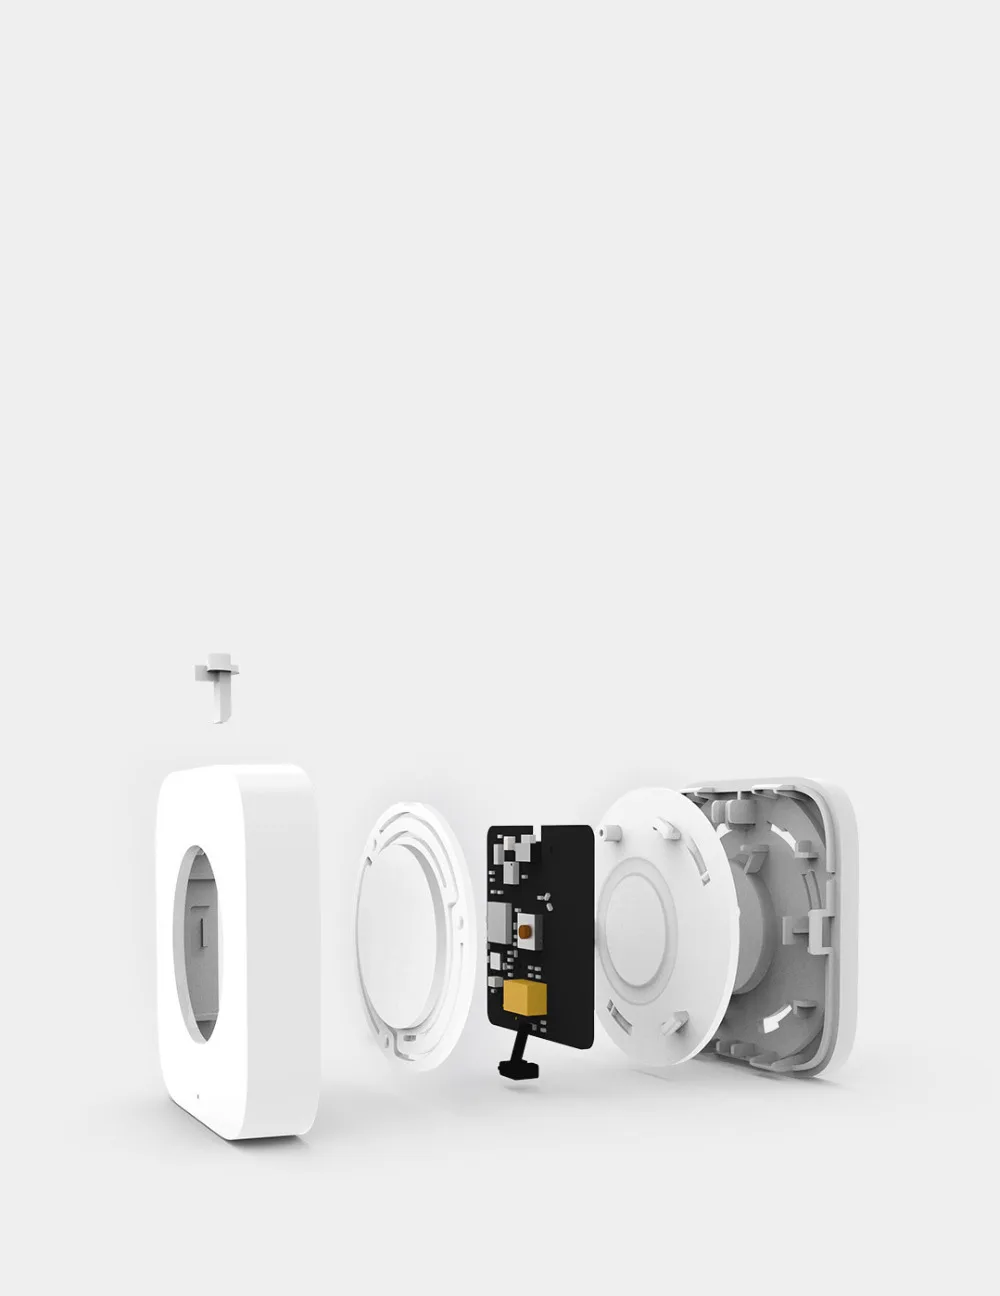 Умный Многофункциональный беспроводной переключатель Xiaomi AQara, встроенный гироскоп, функция работы с многофункциональным шлюзом